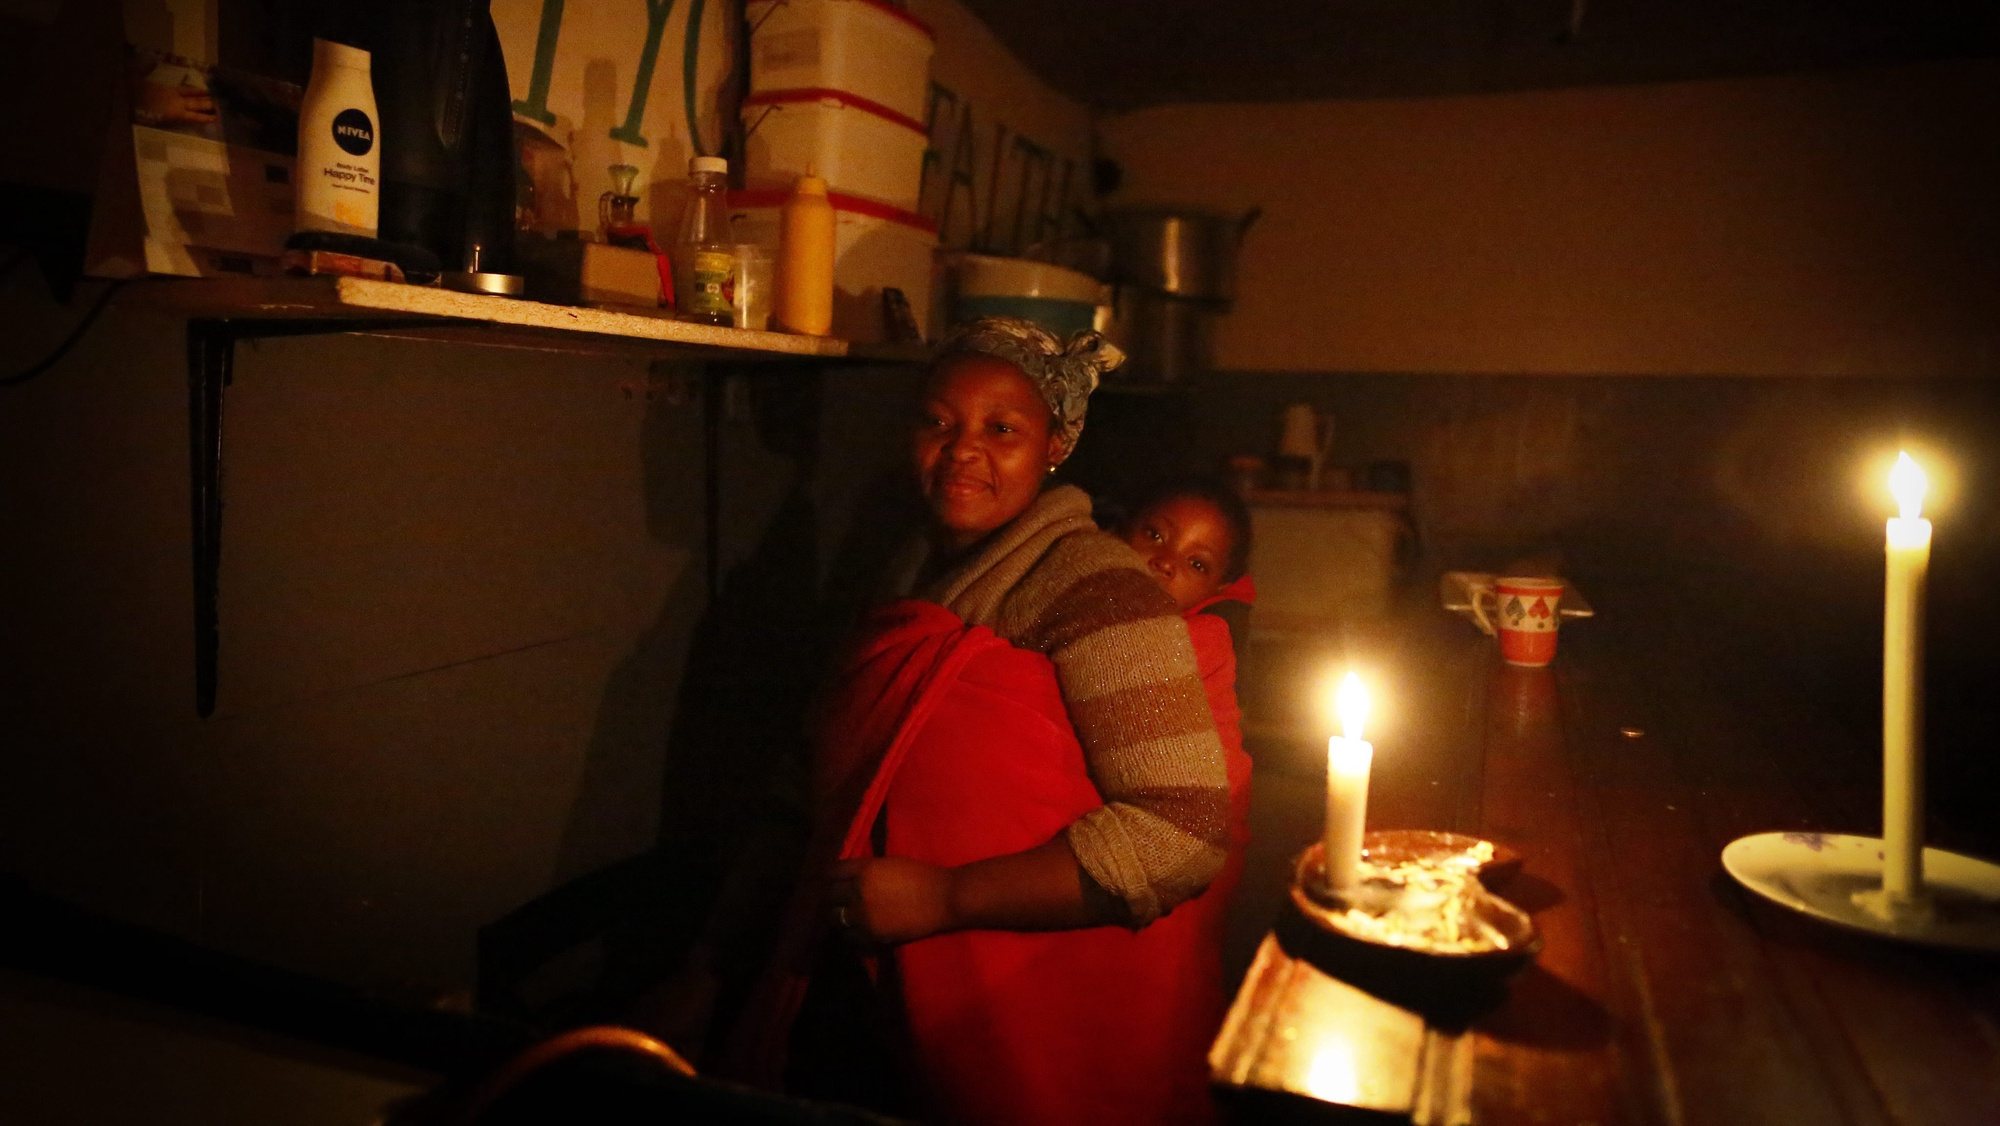 Crise / Cortes de energia na África do Sul: A possibilidade de sabotagem